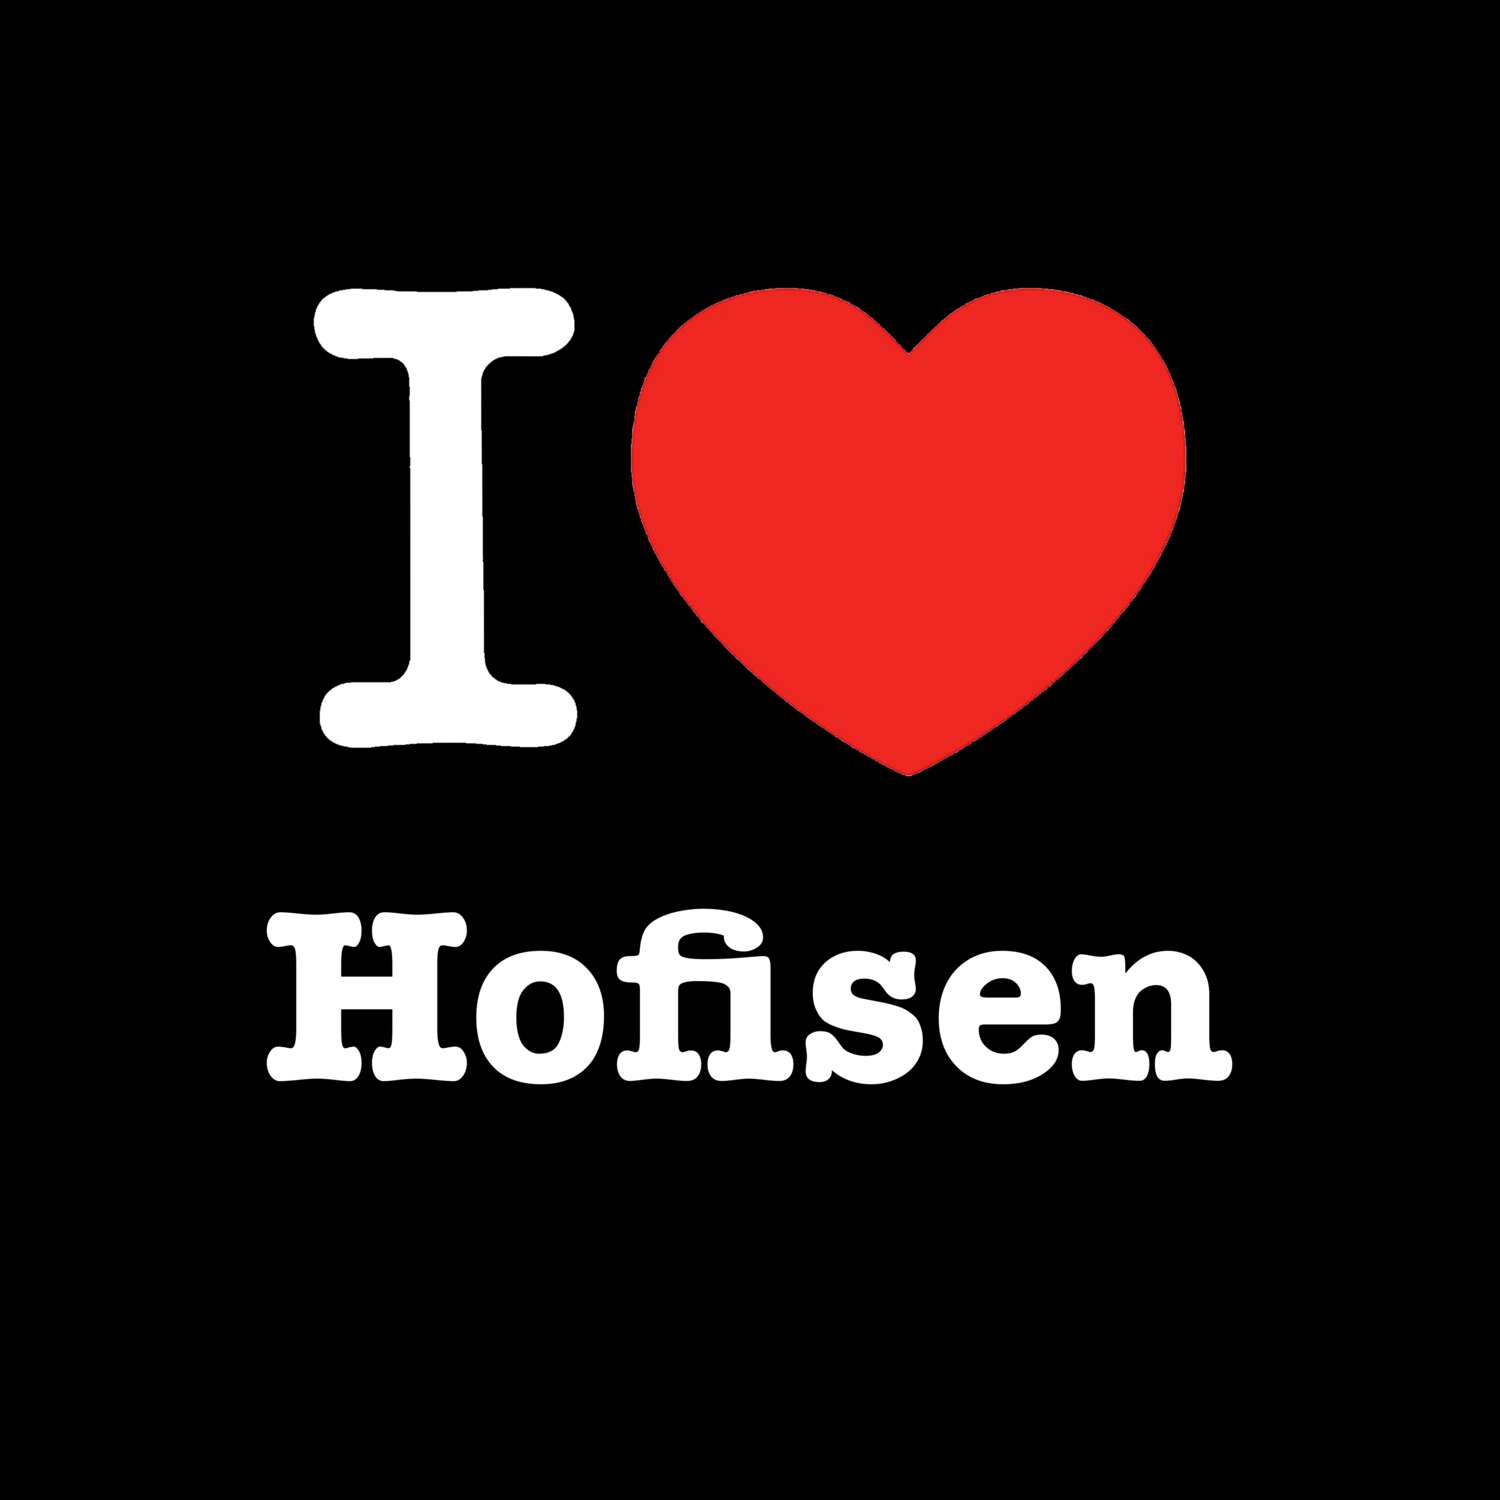 Hofisen T-Shirt »I love«